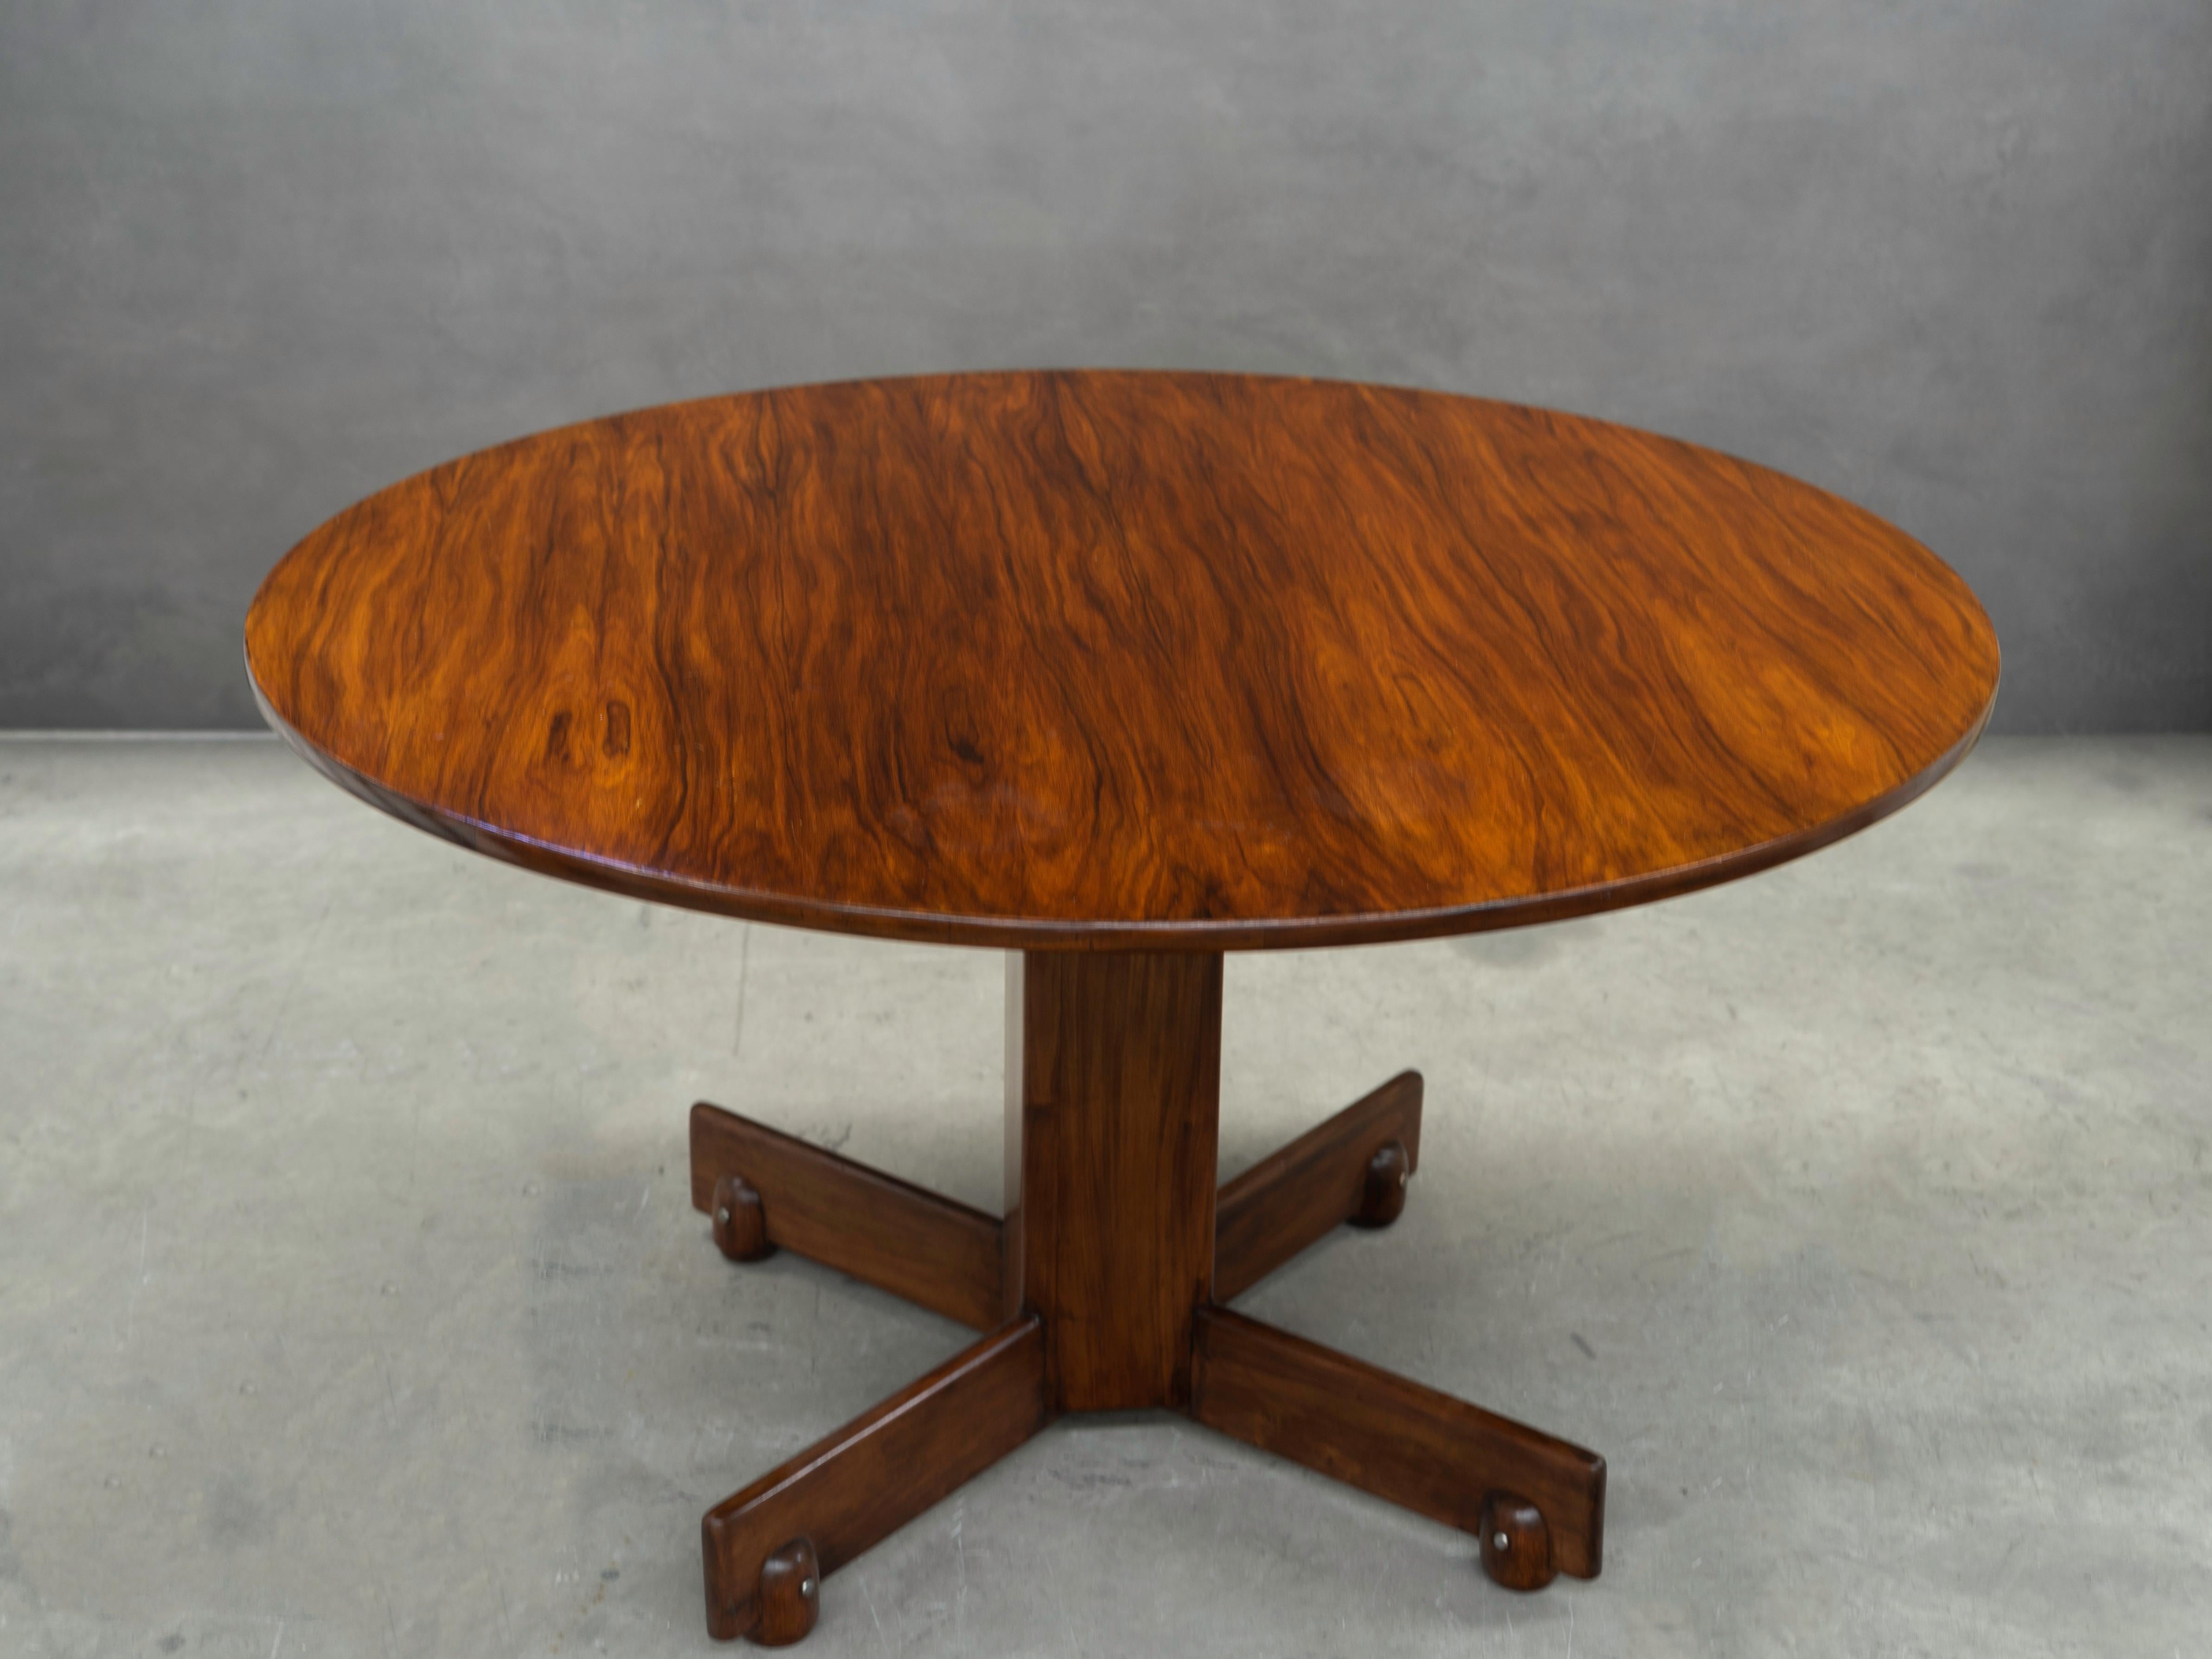 Diseñada en 1960 por Sergio Rodrigues, esta moderna mesa de comedor es de palisandro (Jacaranda).

Creada por Sergio Rodrigues en 1960, la mesa de comedor redonda, bautizada como 